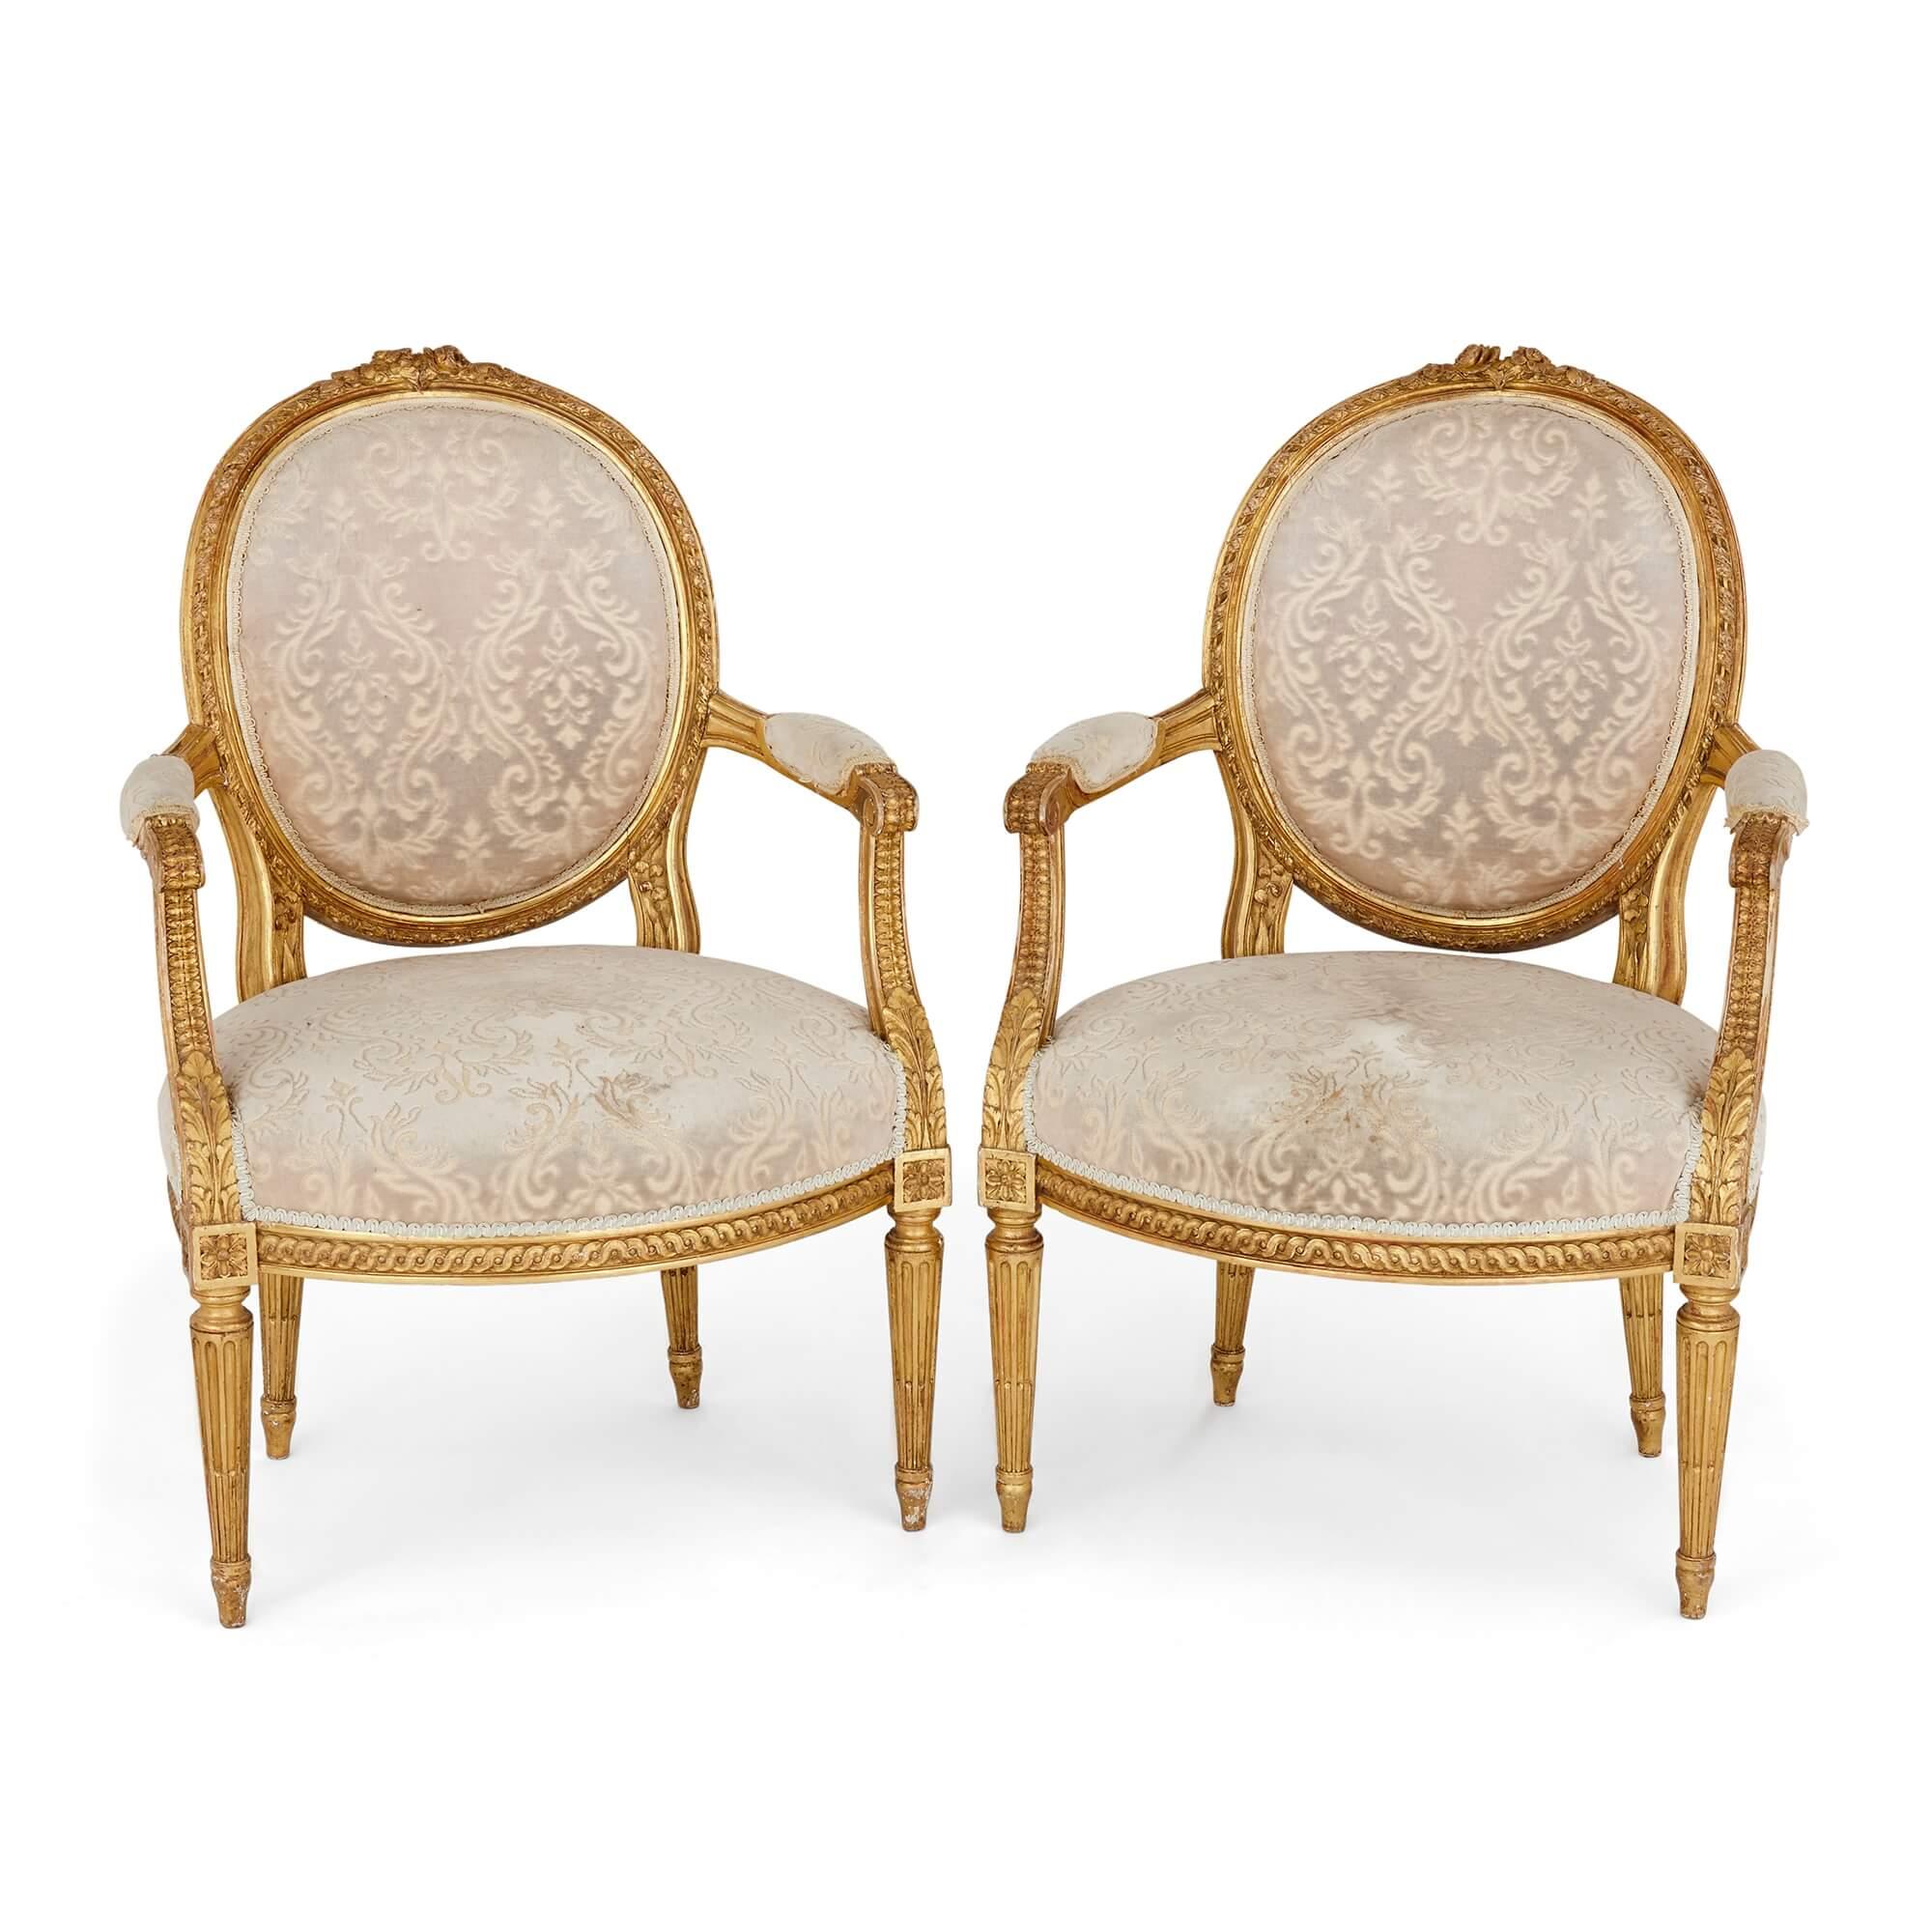 Ein Satz von vier vergoldeten Fauteuils im Stil Louis XVI
Französisch, Anfang 20. Jahrhundert
Maße: Höhe 92cm, Breite 60cm, Tiefe 55cm

Diese schönen Fauteuils - Sessel mit offenen Seiten und gepolsterten Armlehnen, die typisch für die Stile